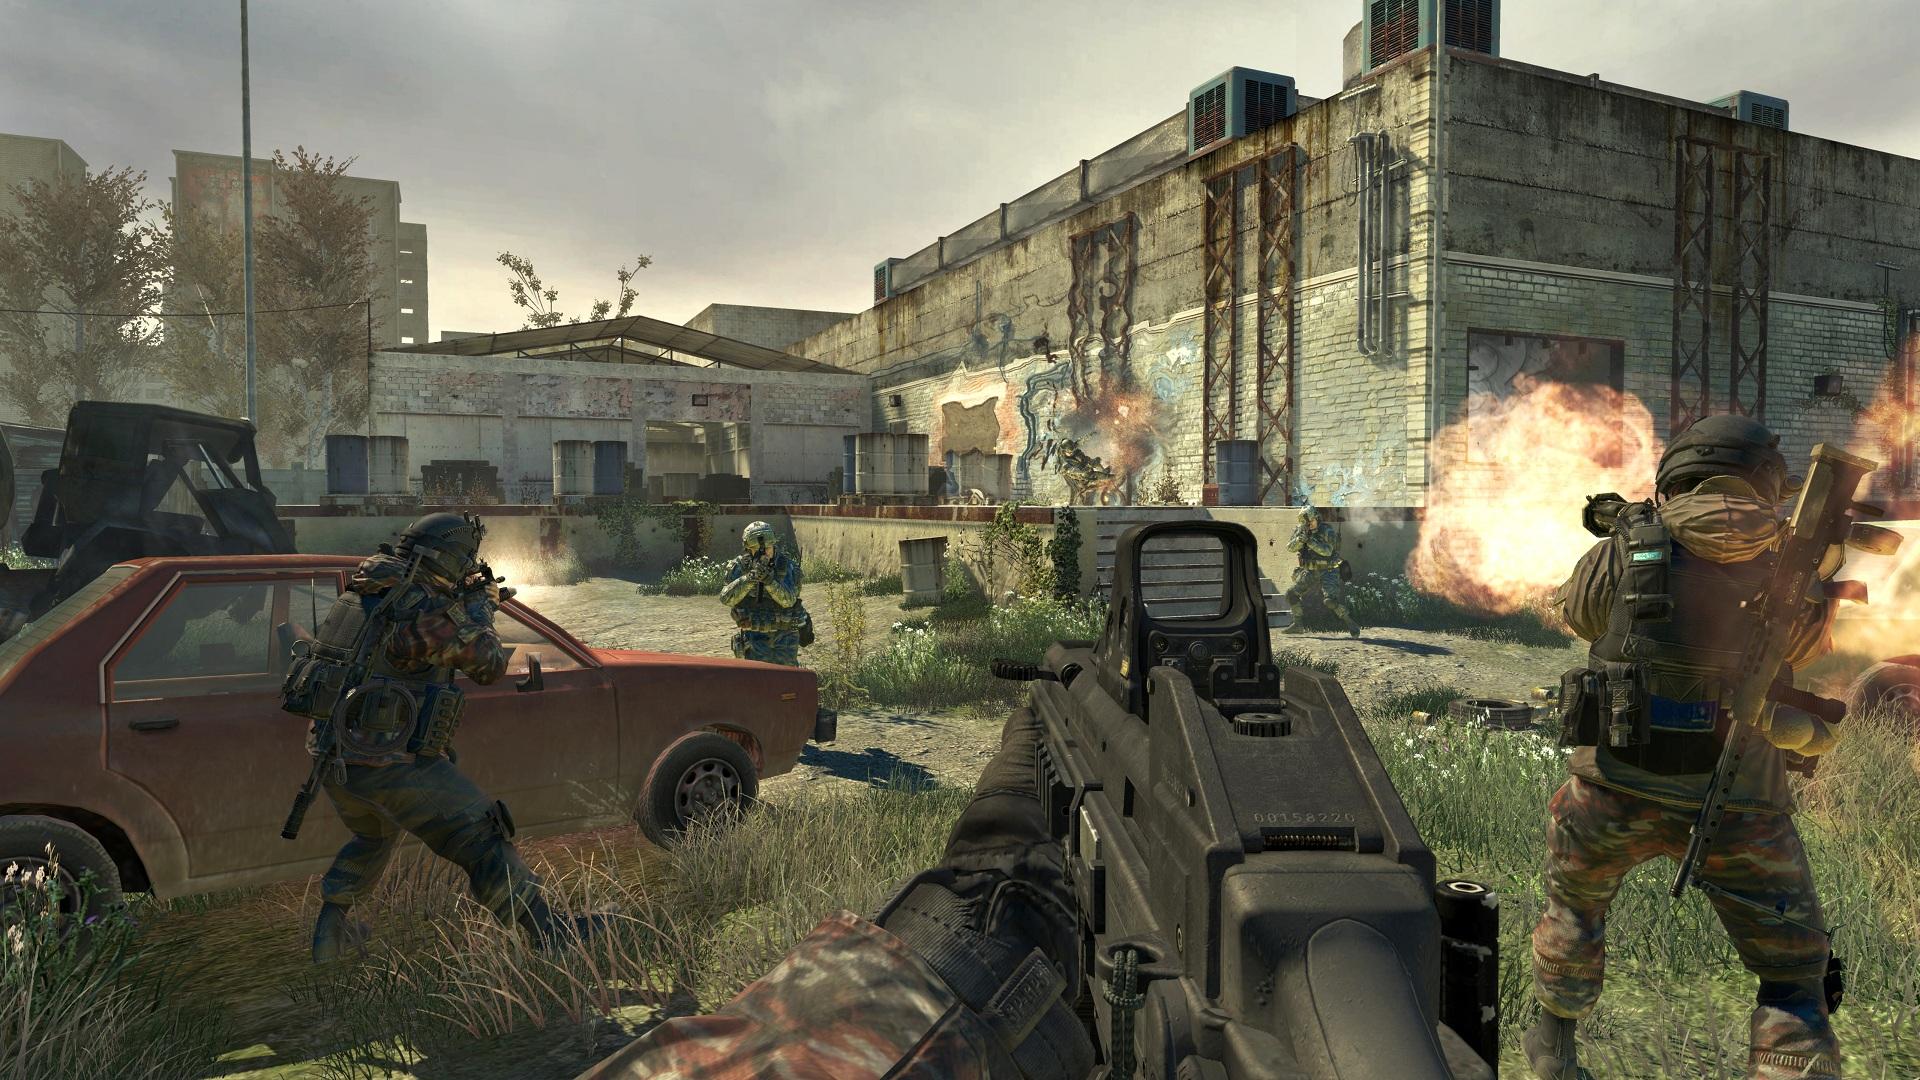 ÐšÐ°Ñ€Ñ‚Ð¸Ð½ÐºÐ¸ Ð¿Ð¾ Ð·Ð°Ð¿Ñ€Ð¾ÑÑƒ Call of Duty 4: Modern Warfare 2